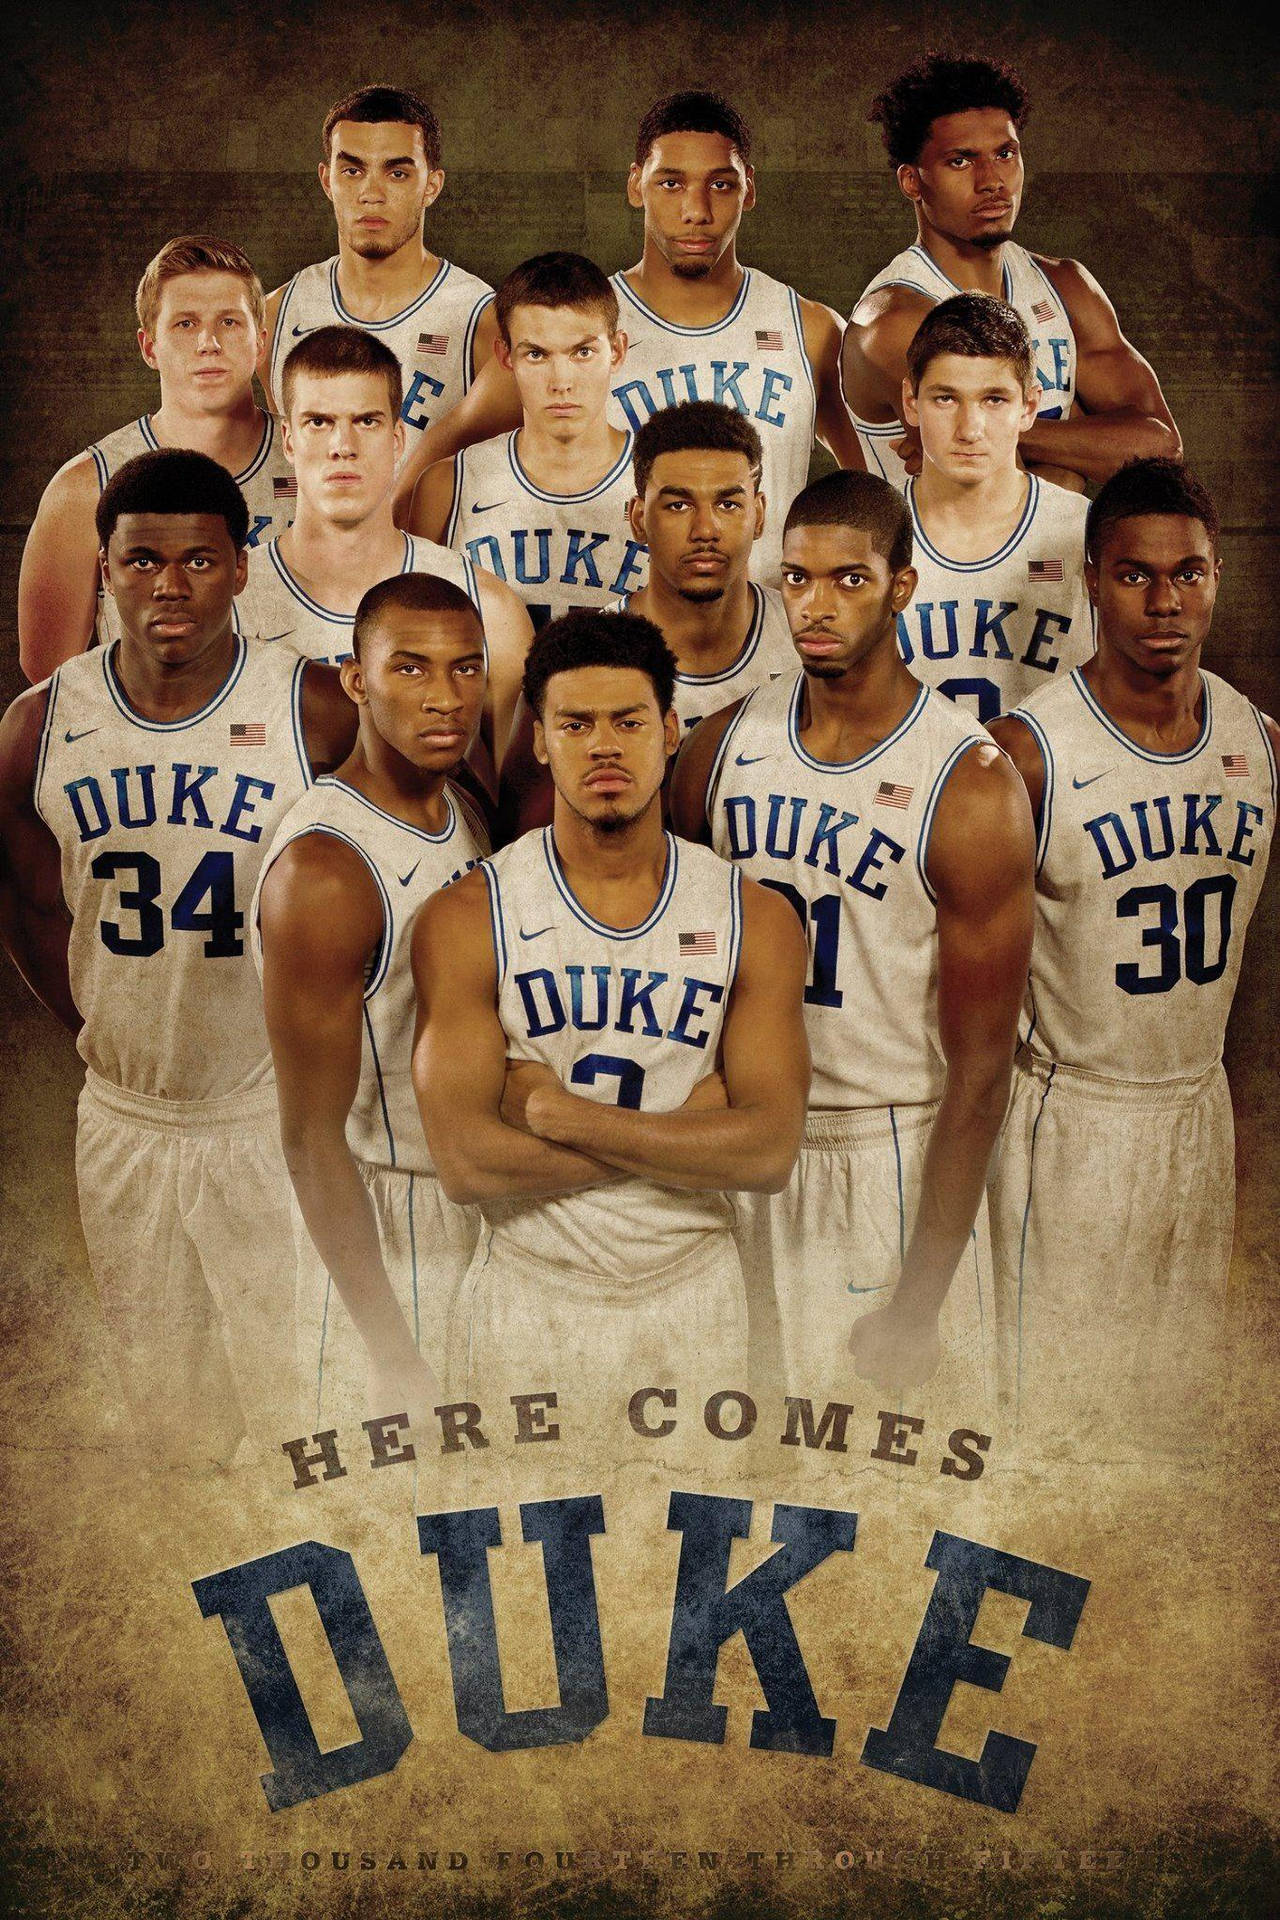 Duke Blue Devils Basketball Team Wallpaper